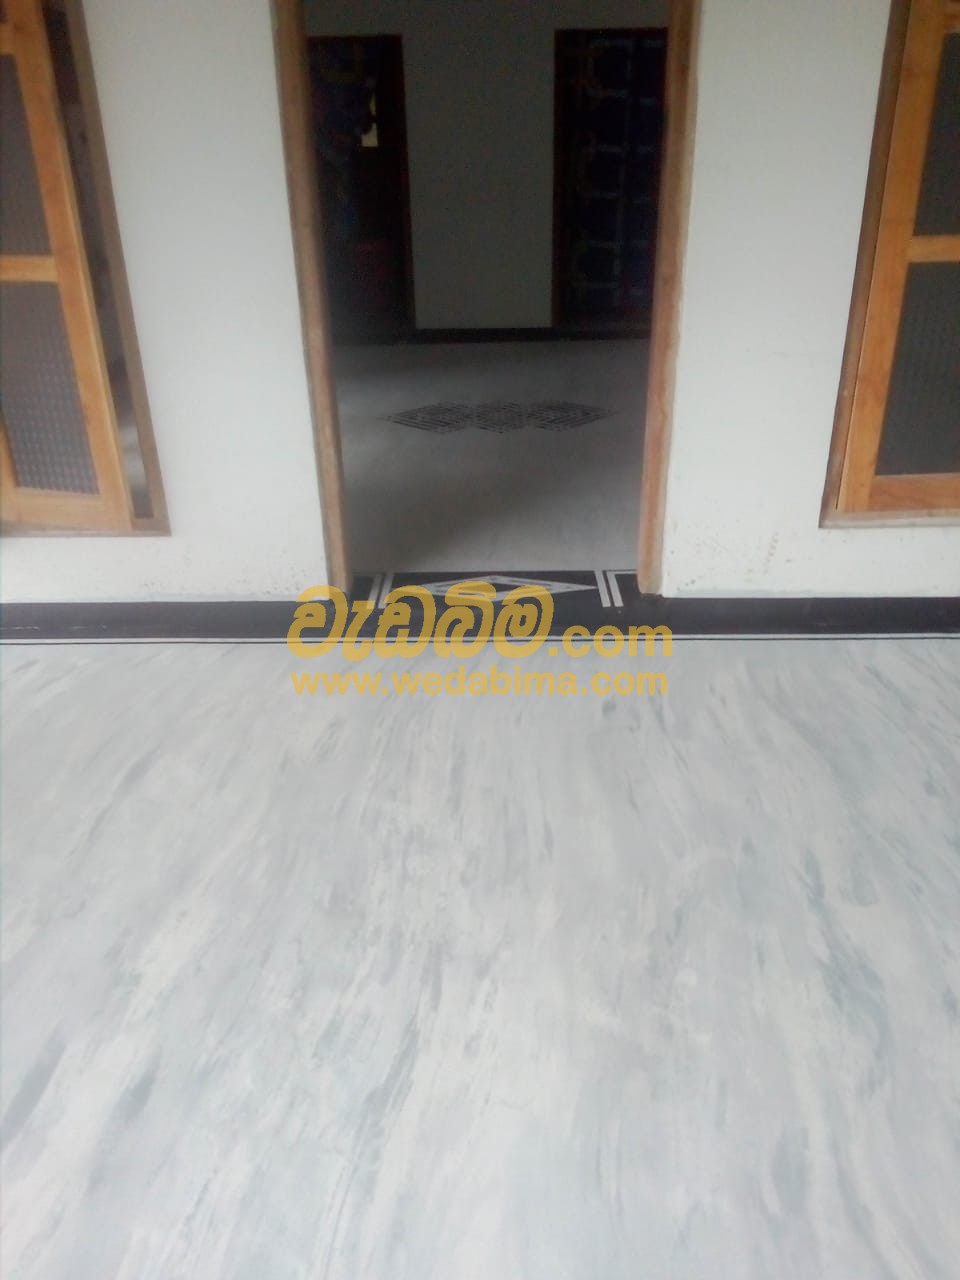 Titanium flooring Sri Lanka Best Titanium floor work